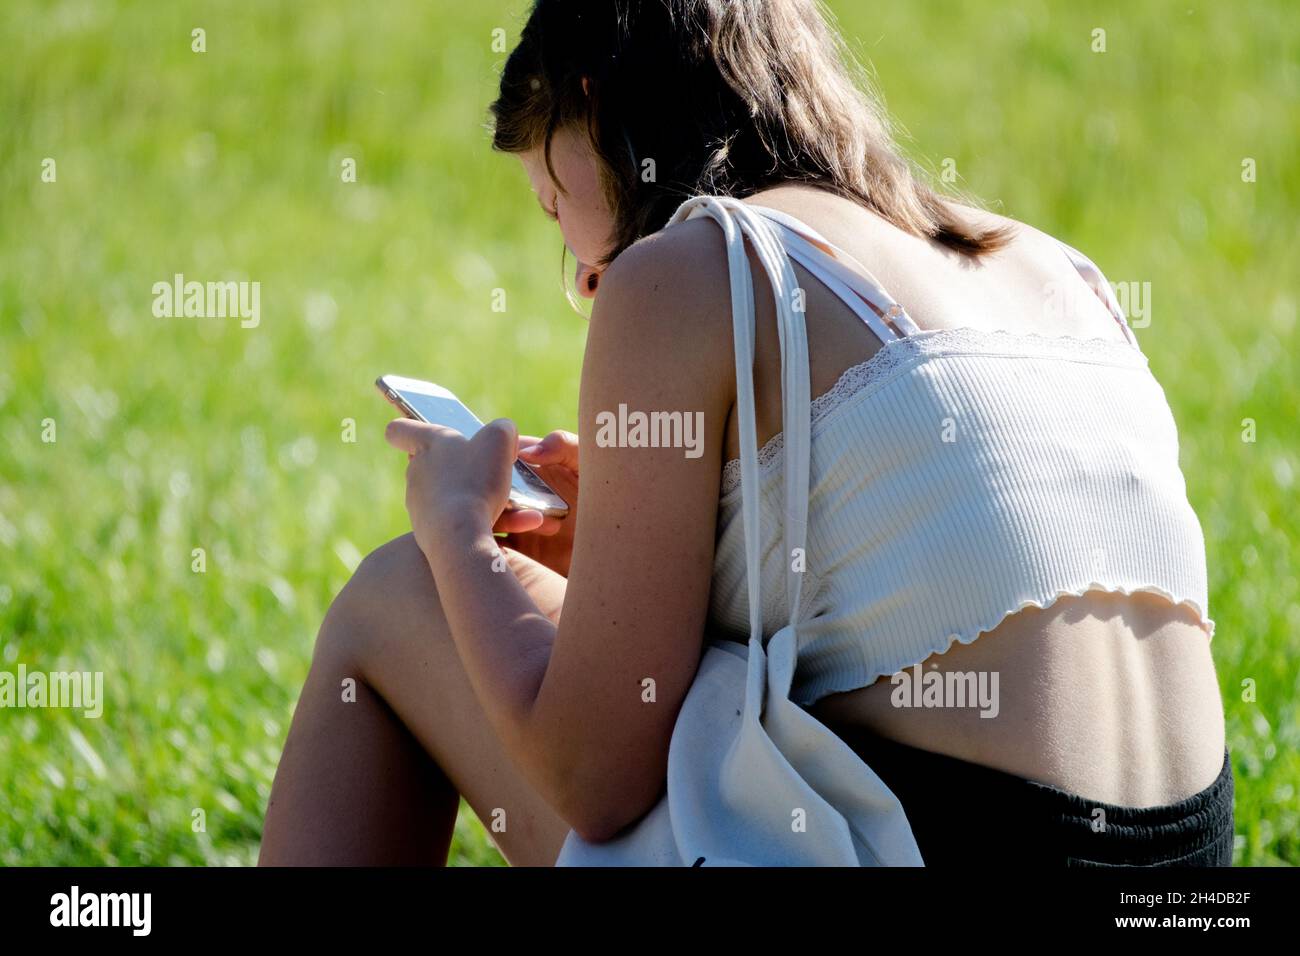 Jeune adolescente envoyant des SMS au téléphone dans le parc, adolescent avec téléphone portable à l'extérieur, smartphone jeune adolescente génération Z adolescent Banque D'Images